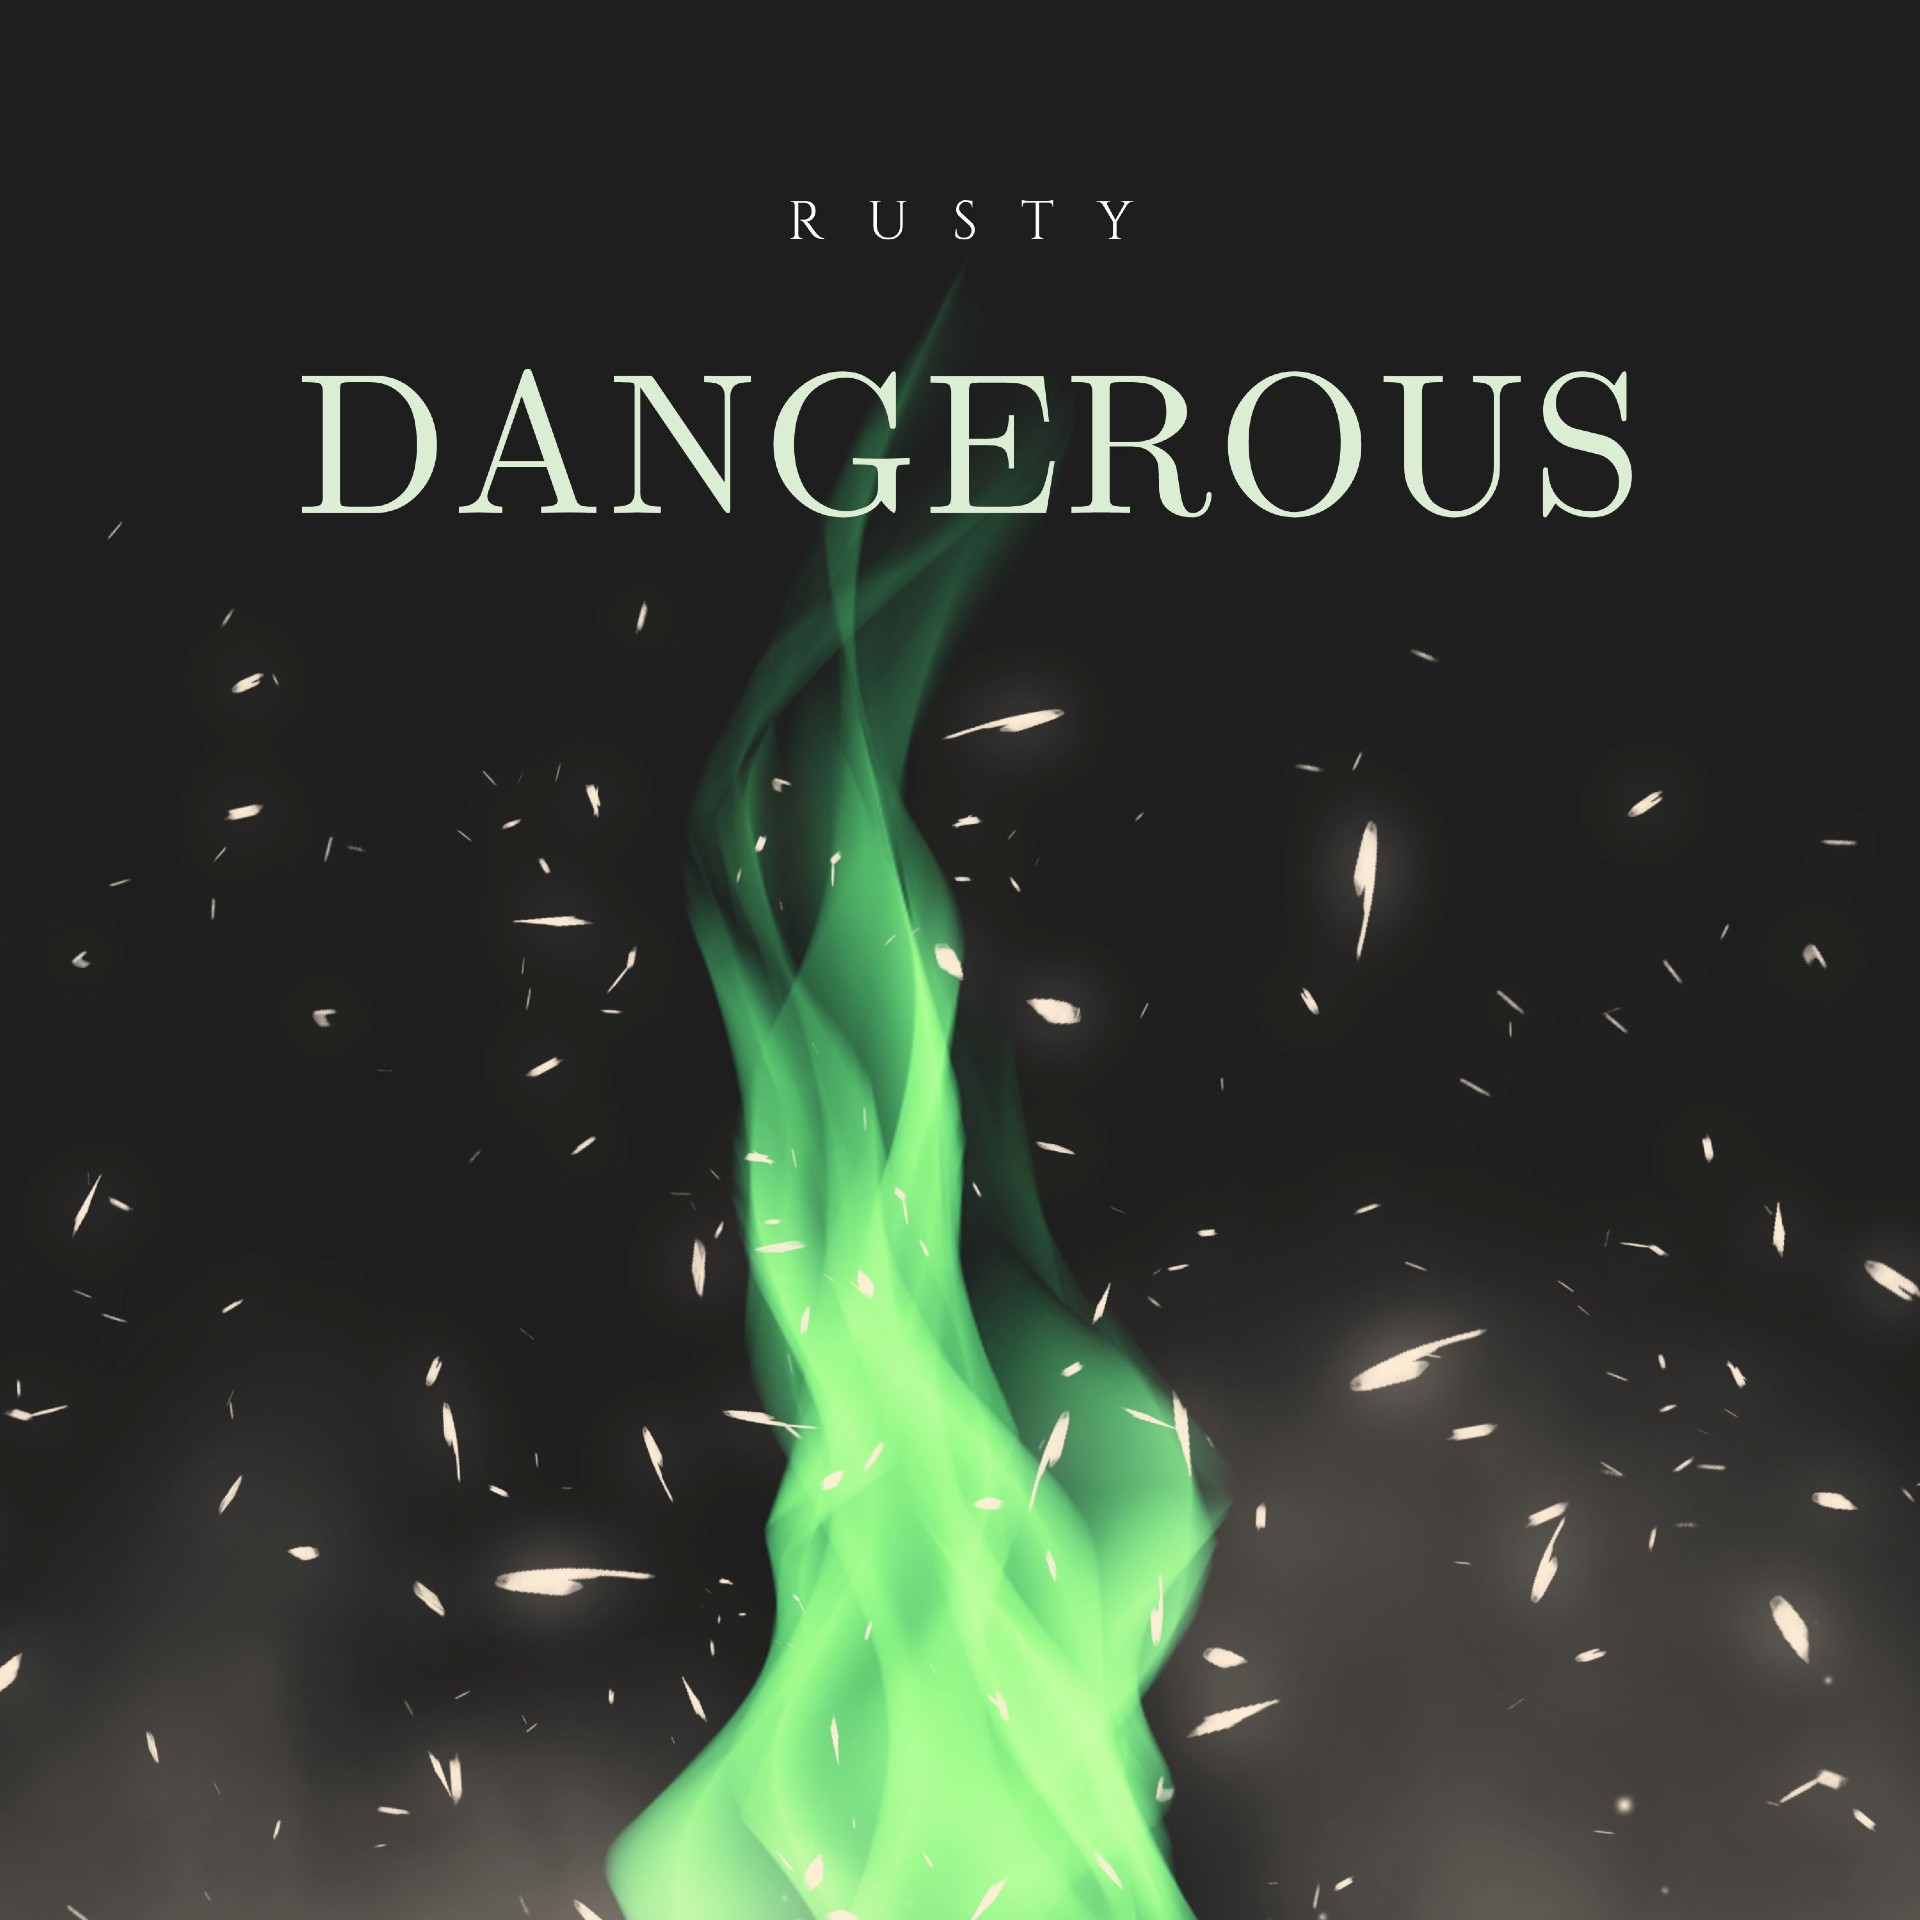 RUSTY “Dangerous” single artwork